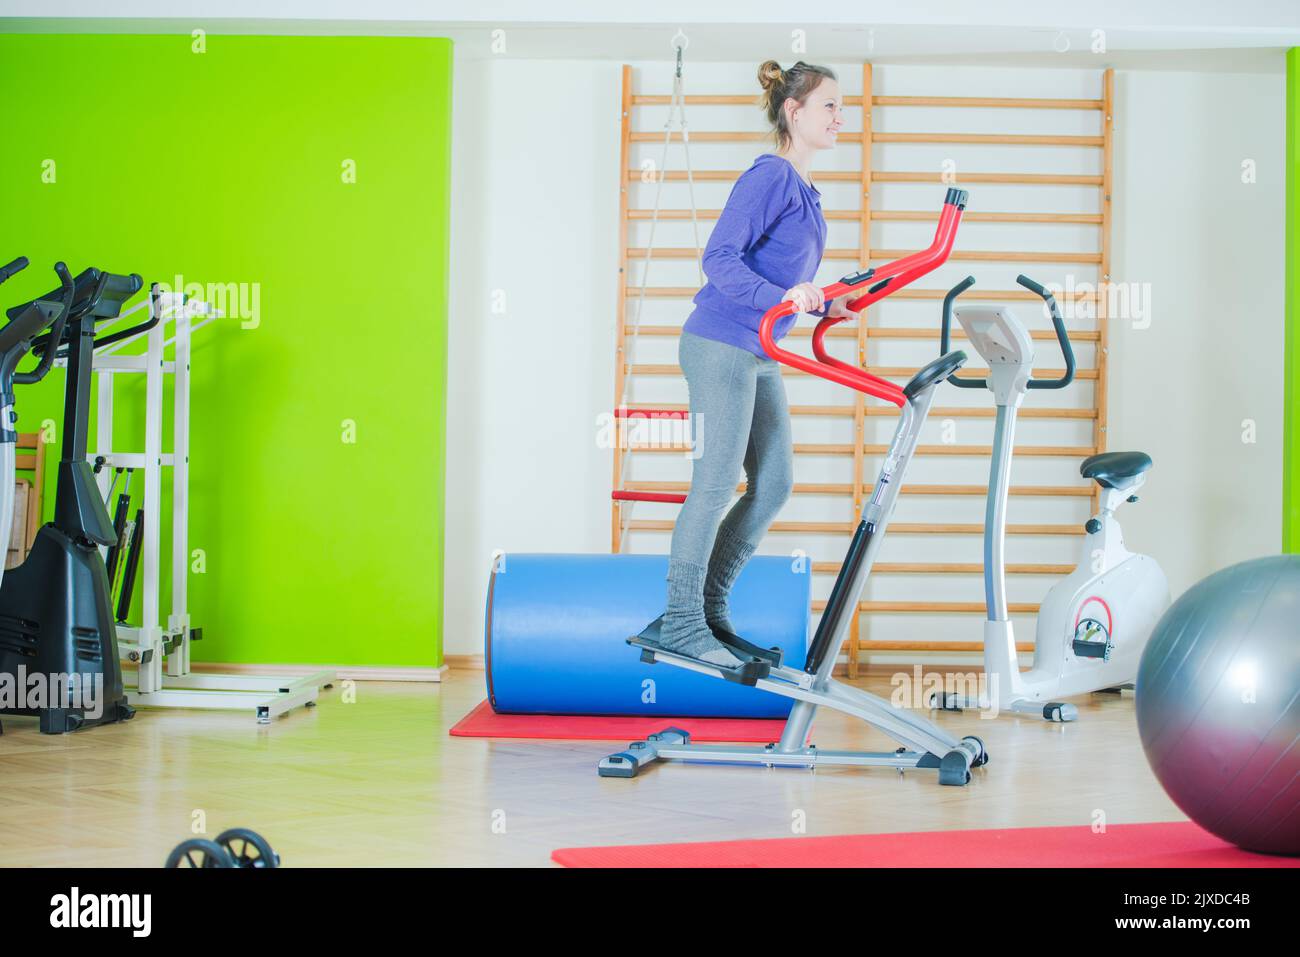 Jeune femme souriante faisant son entraînement de fitness sur machine elliptique de Cross Trainer. Salle d'entraînement avec différents équipements de formation en arrière-plan. Banque D'Images